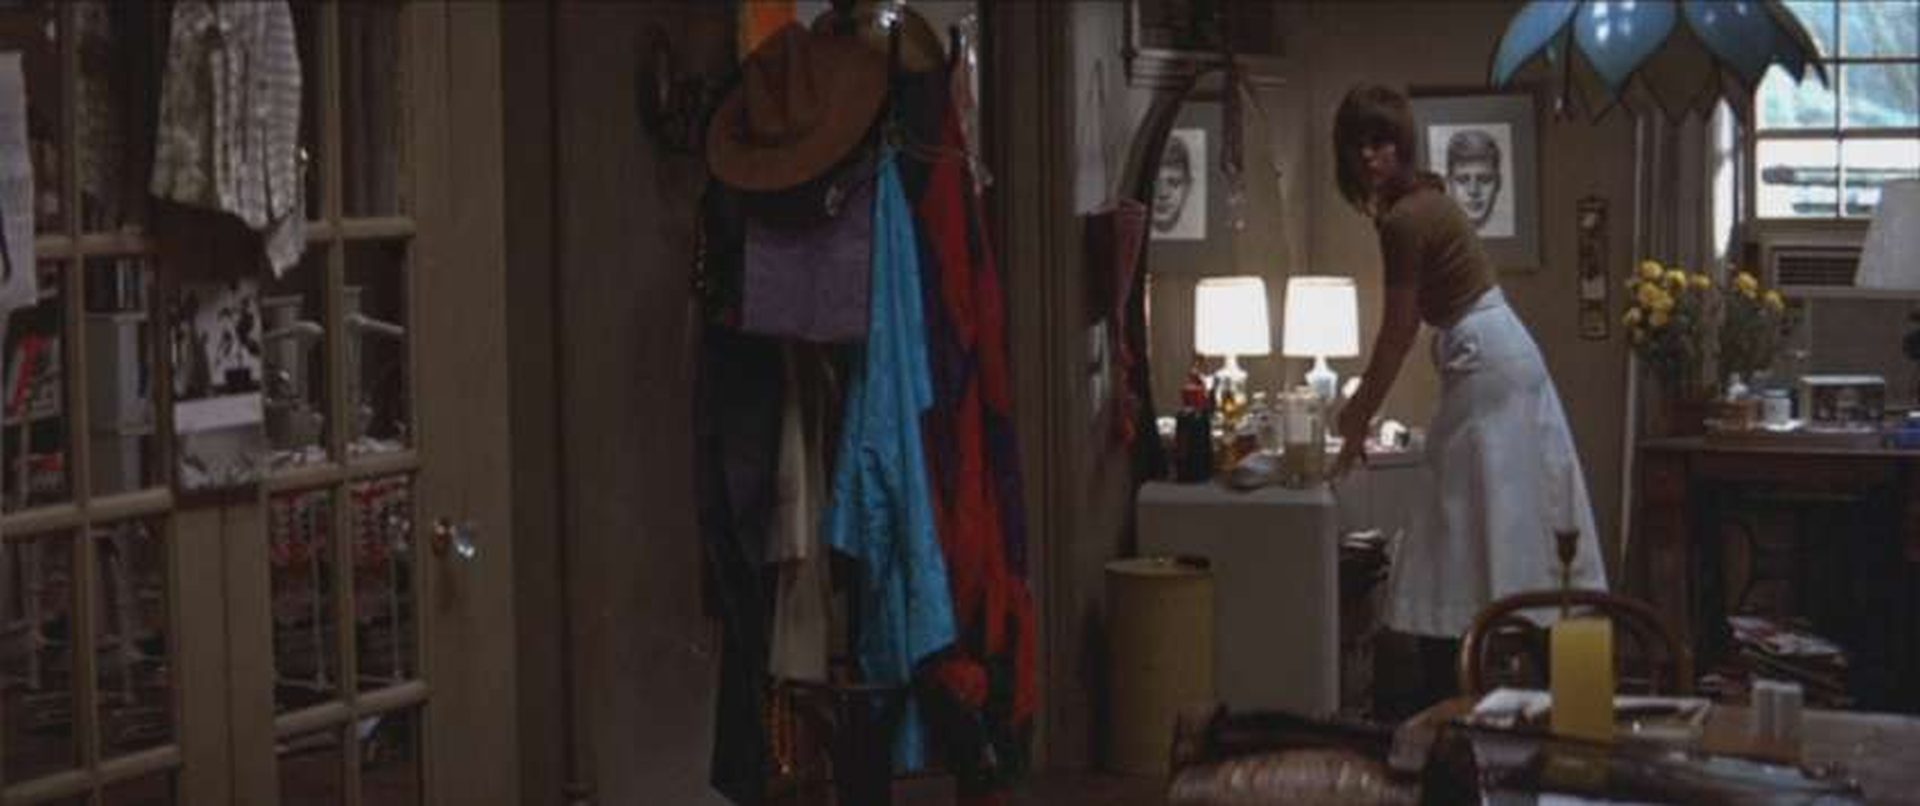 Jane Fonda als Bree Daniels vor dem Spiegel in ihrem Appartement.